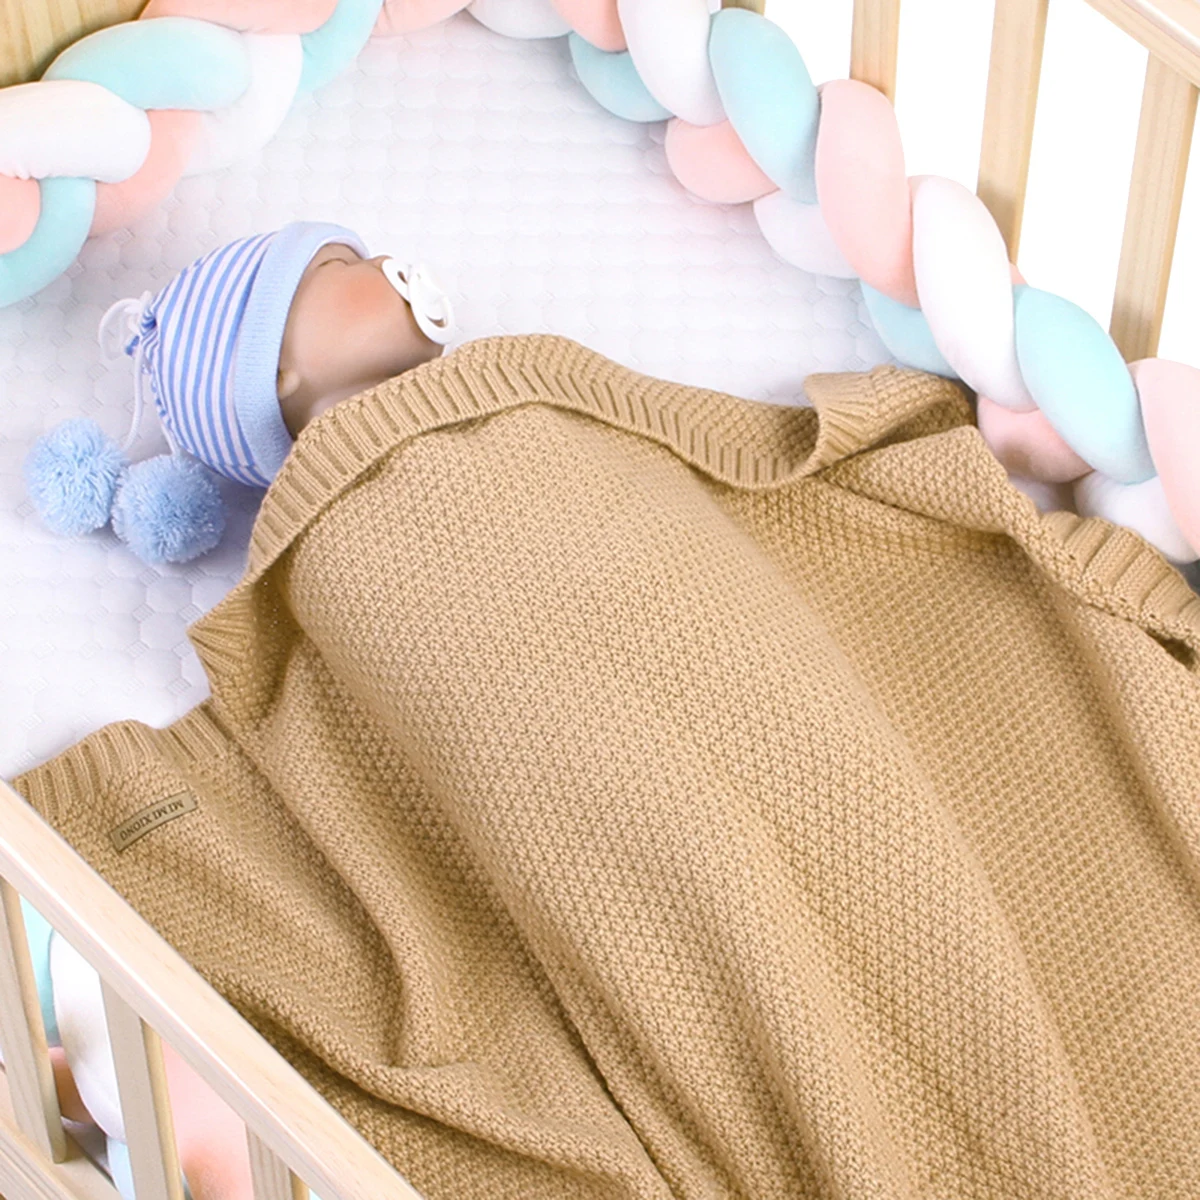 

Детское шерстяное одеяло, супермягкое трикотажное одеяло для новорожденных, пеленка для младенцев, постельное белье для ежемесячного ребе...